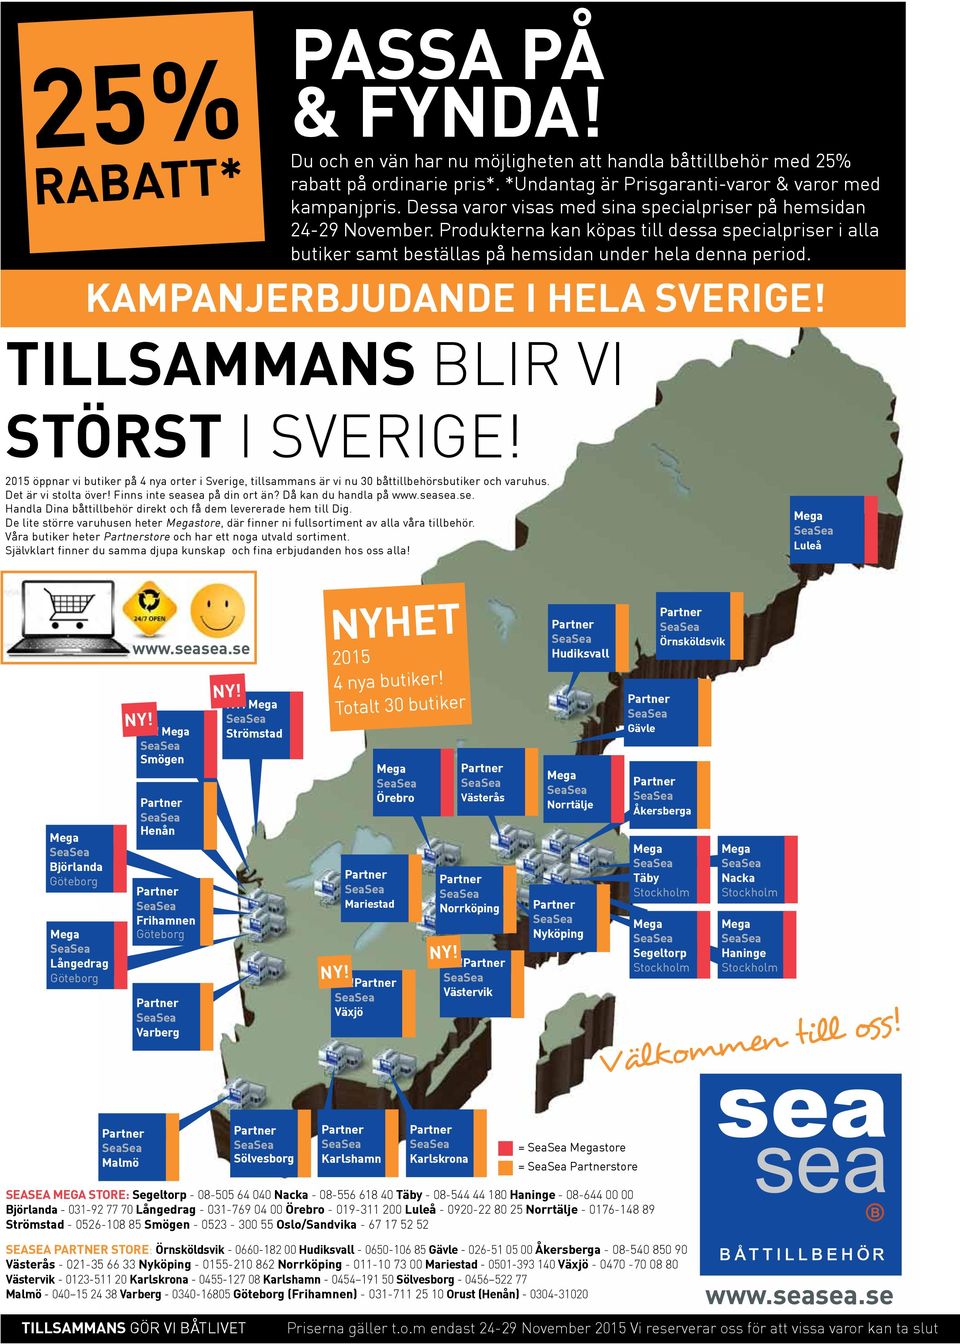 2015 öppnar vi butiker på 4 nya orter i Sverige, tillsammans är vi nu 30 båttillbehörsbutiker och varuhus. Det är vi stolta över! Finns inte sea